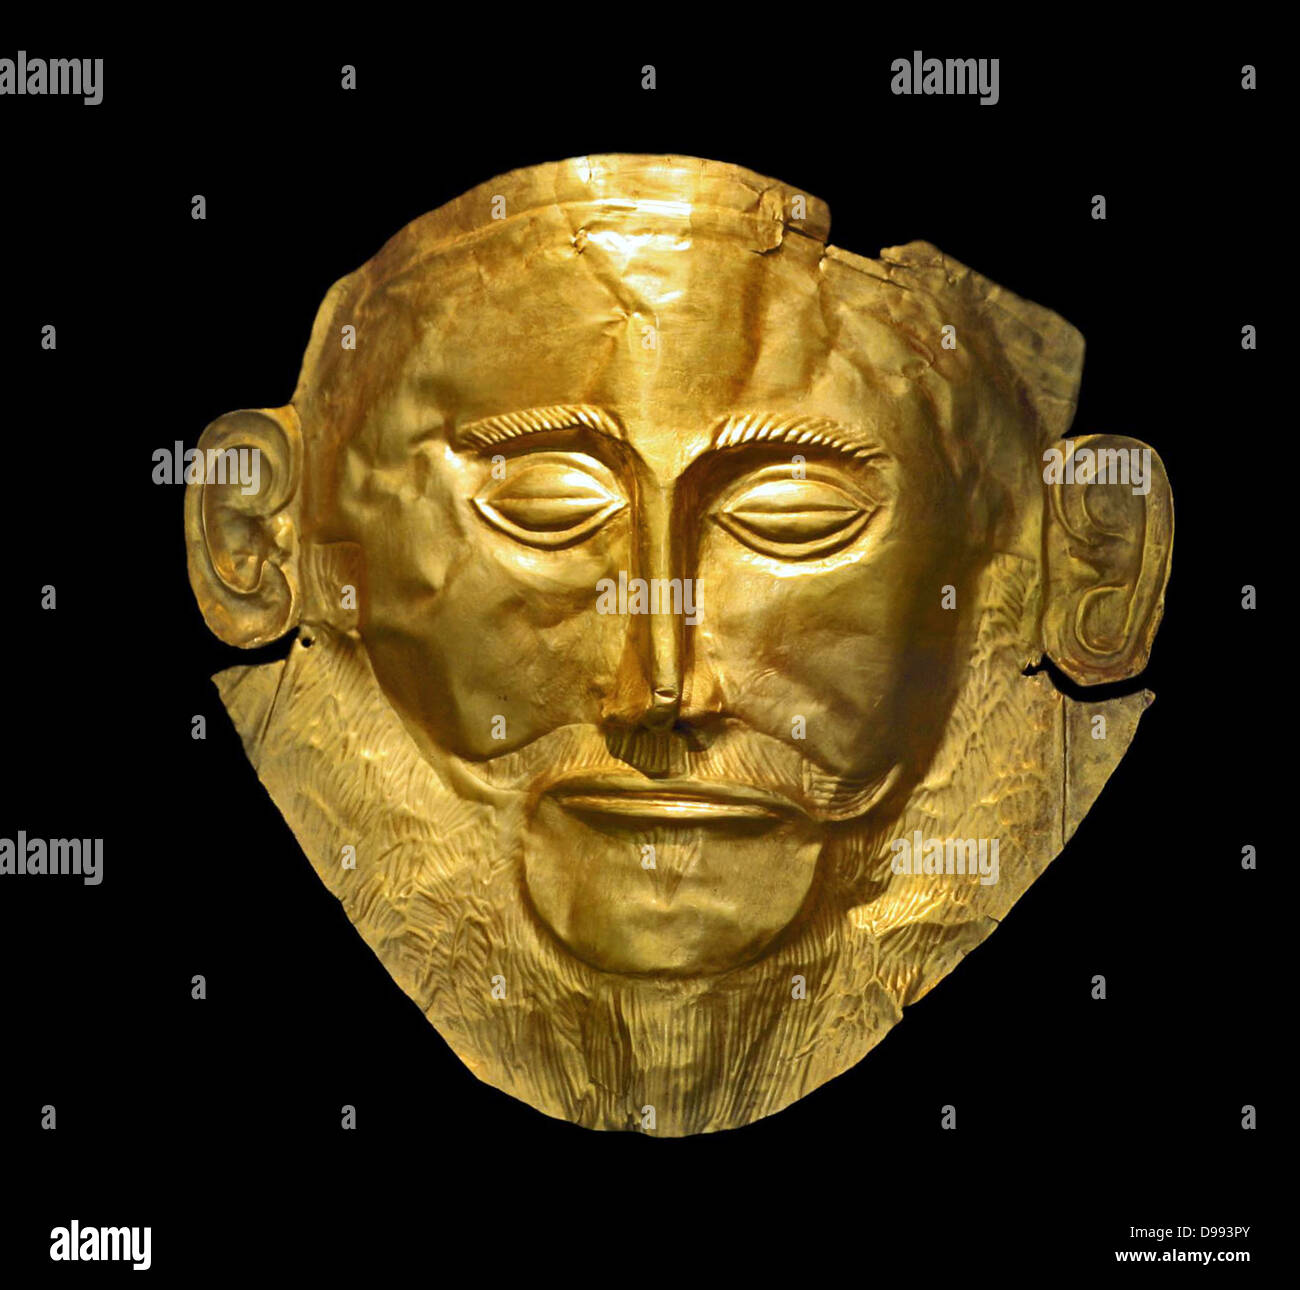 Die Maske des Agamemnon in Mykene Entdeckt im Jahre 1876 von Heinrich Schliemann. Die Maske ist ein gold Beerdigung Maske über das Gesicht eines Körpers in eine Beerdigung, die Welle entfernt gefunden. Schliemann glaubte, dass er den Körper des legendären griechischen leader Agamemnon entdeckt hatte Stockfoto